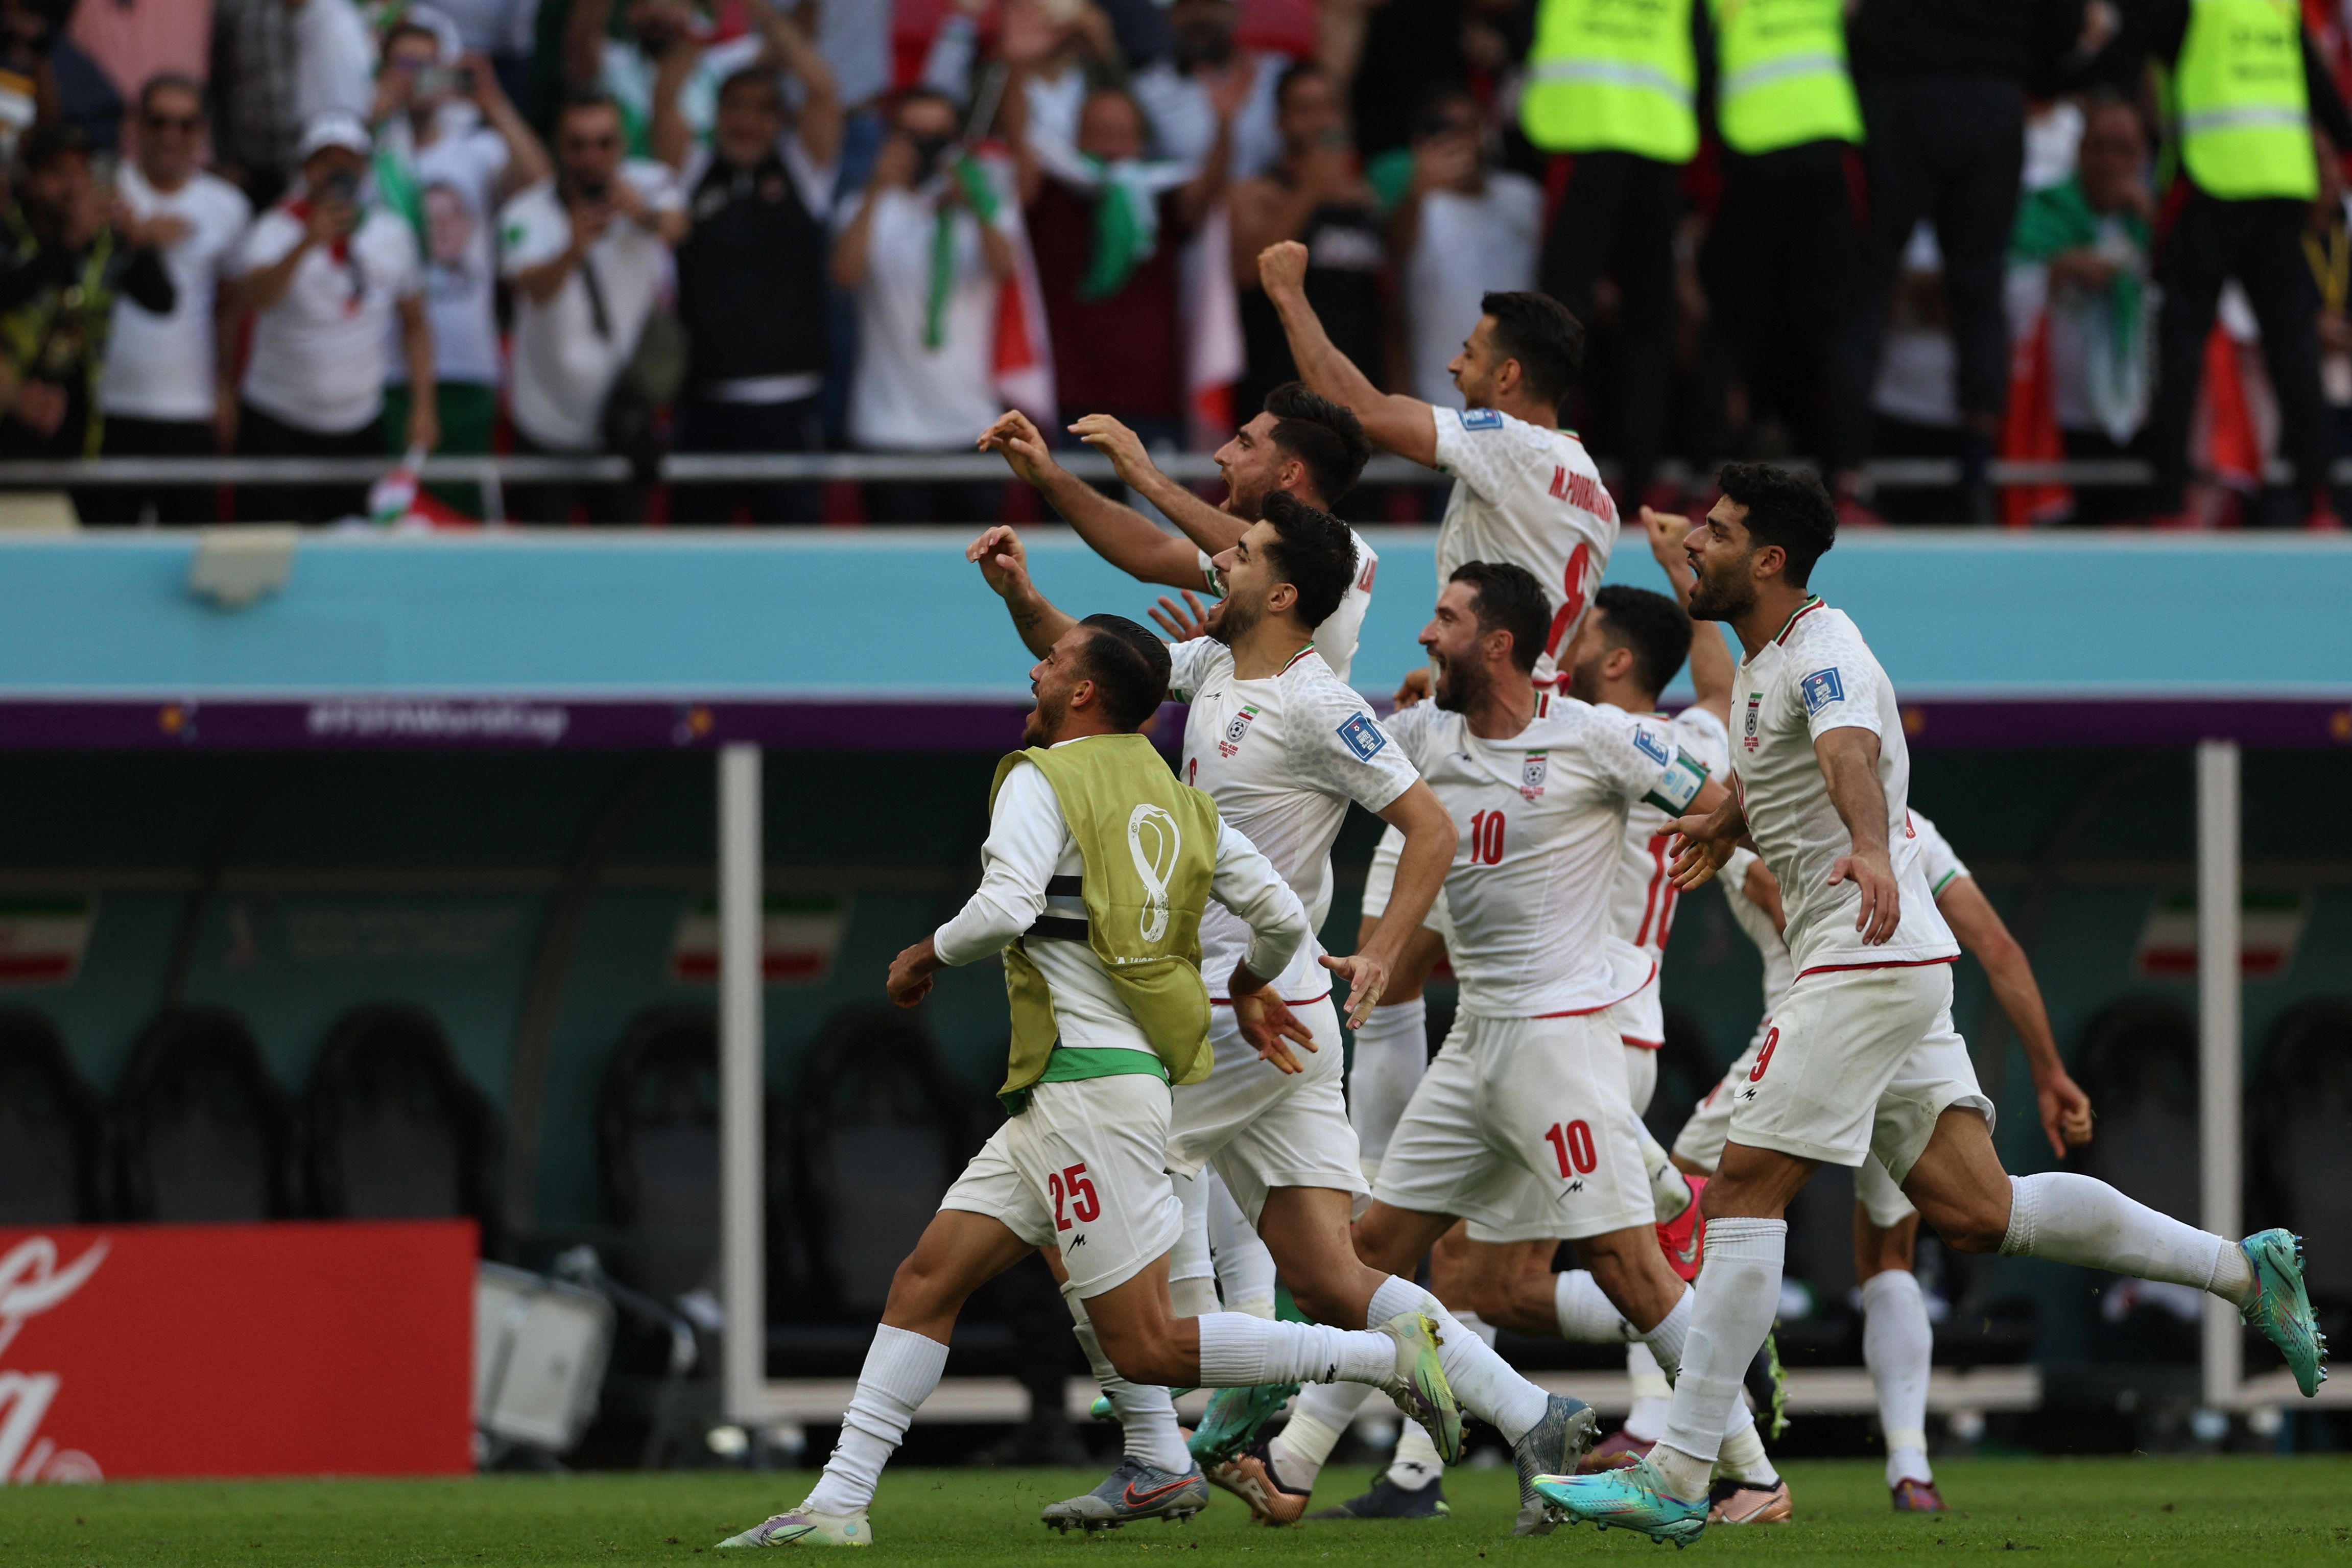 La locura se adueñó de los iraníes luego del triunfo 'in extemis' frente a Gales. (Foto Prensa Libre: AFP)